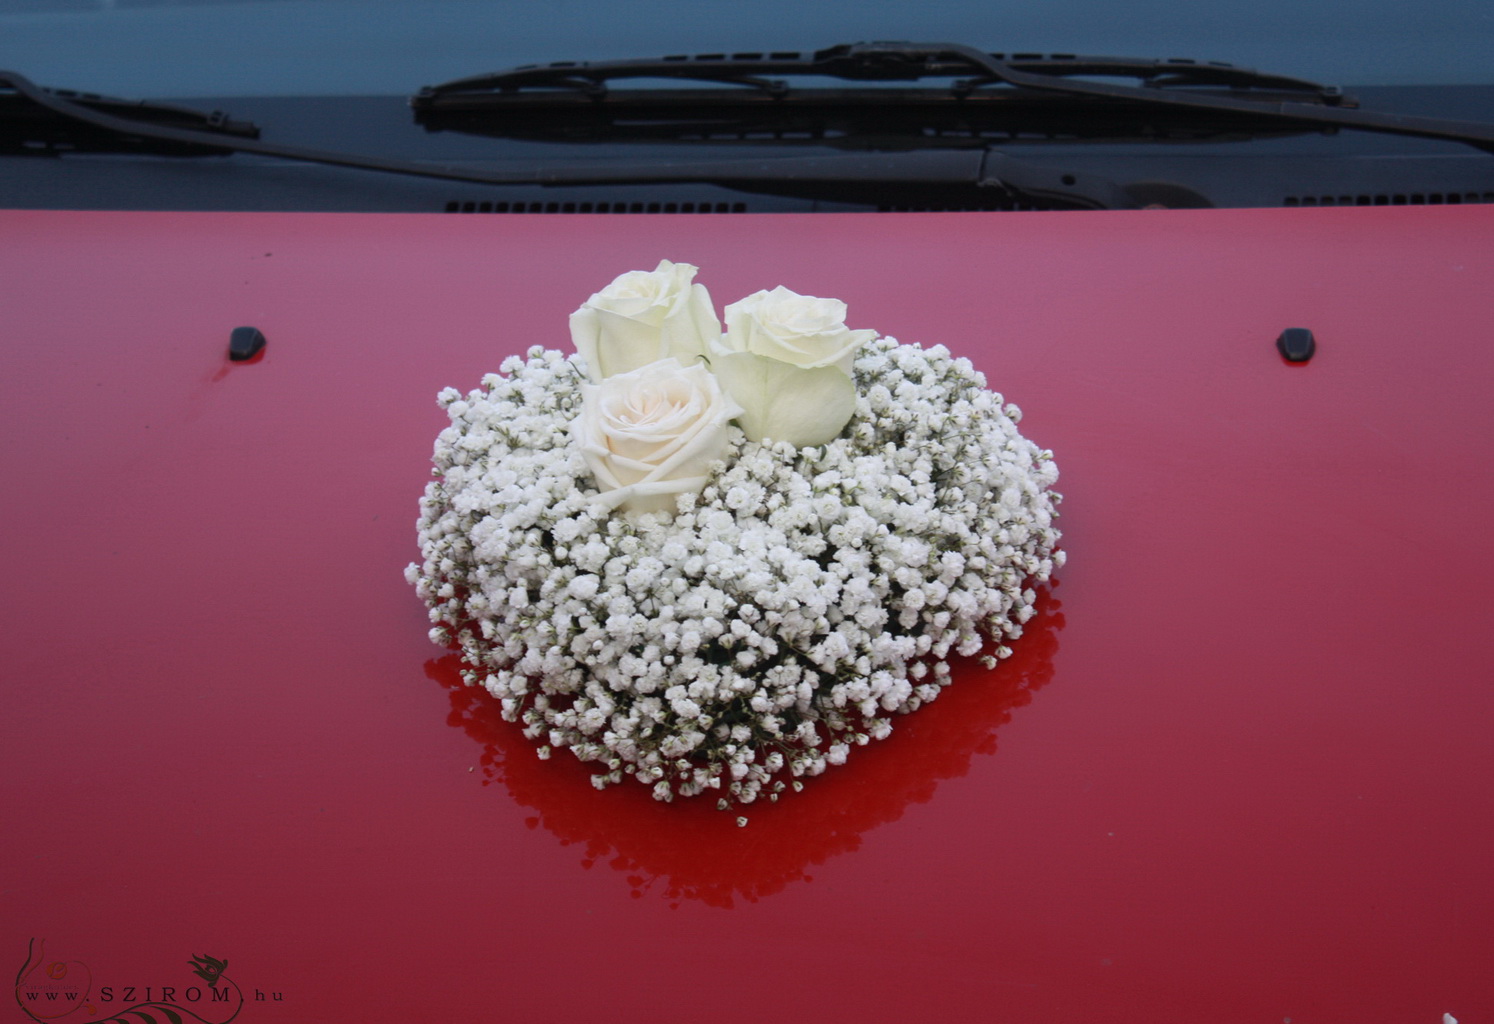 Virágküldés Budapest - szív alakú kicsi autódísz (rezgő, rózsa, fehér)